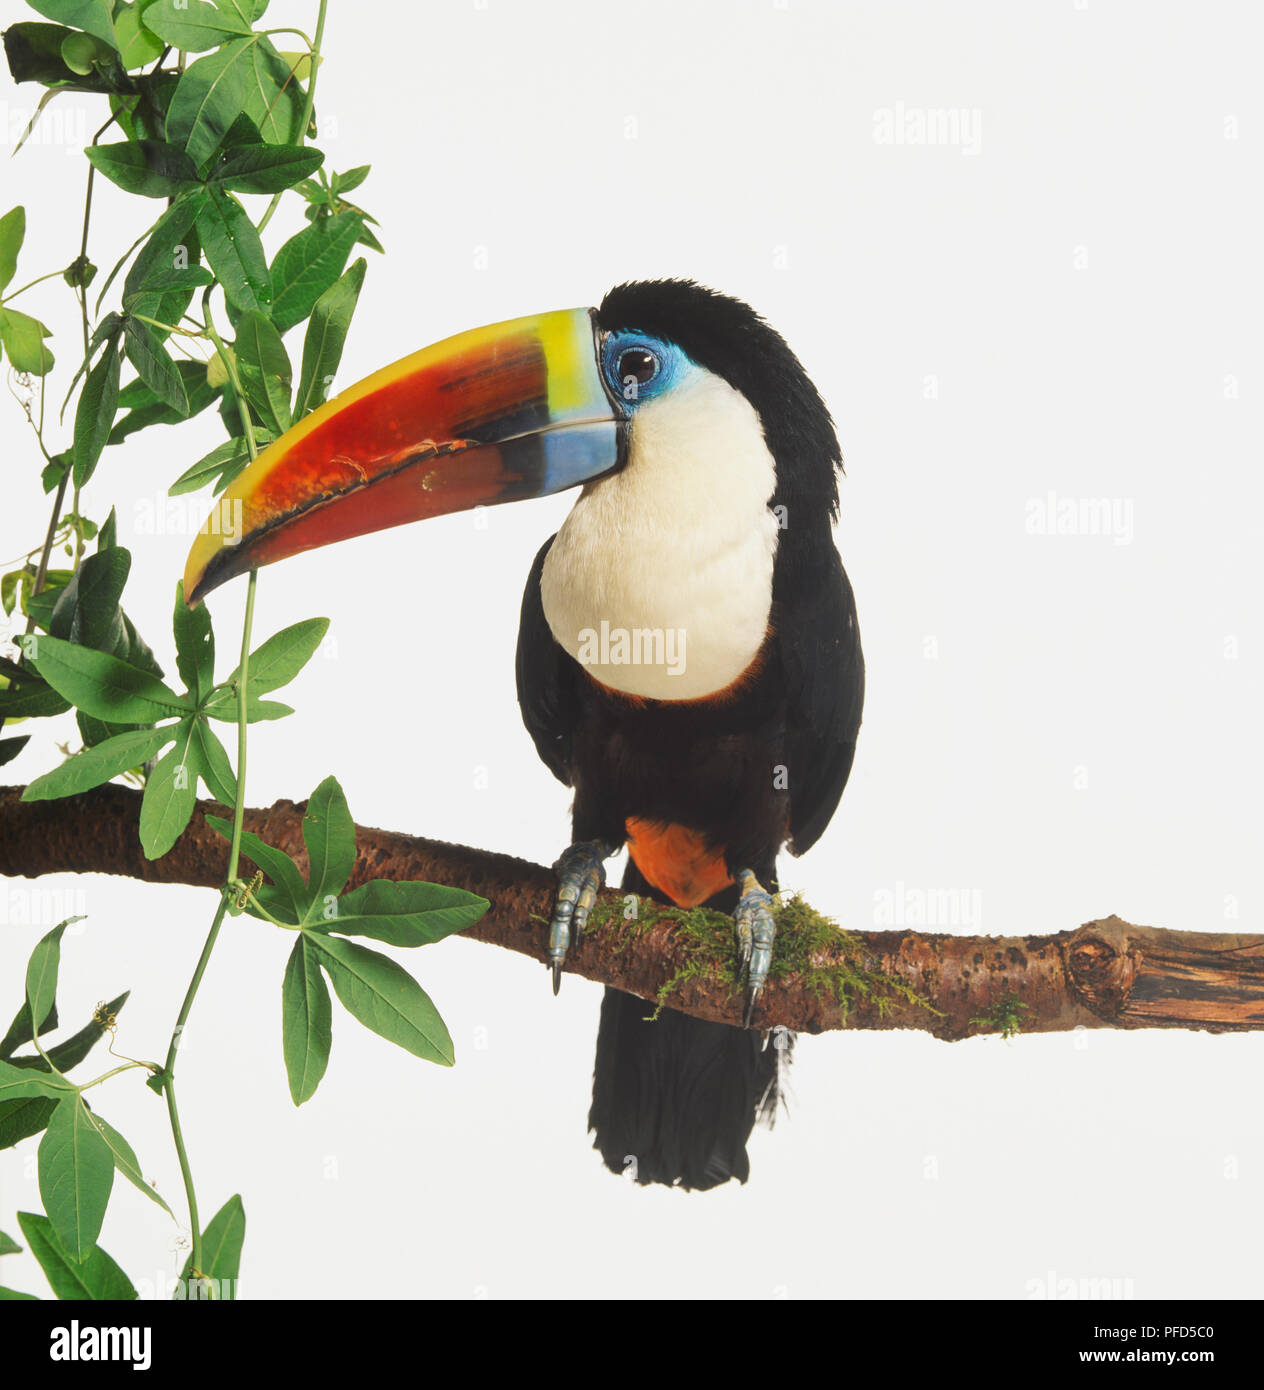 Red-billed Toucan, Ramphastos tucanus, avec la poitrine blanche assis dans une branche d'arbre. Le bec de l'oiseau est de couleur arc-en-ciel et ses griffes sont exposés par la manière dont il a son assise sur la branche. Banque D'Images